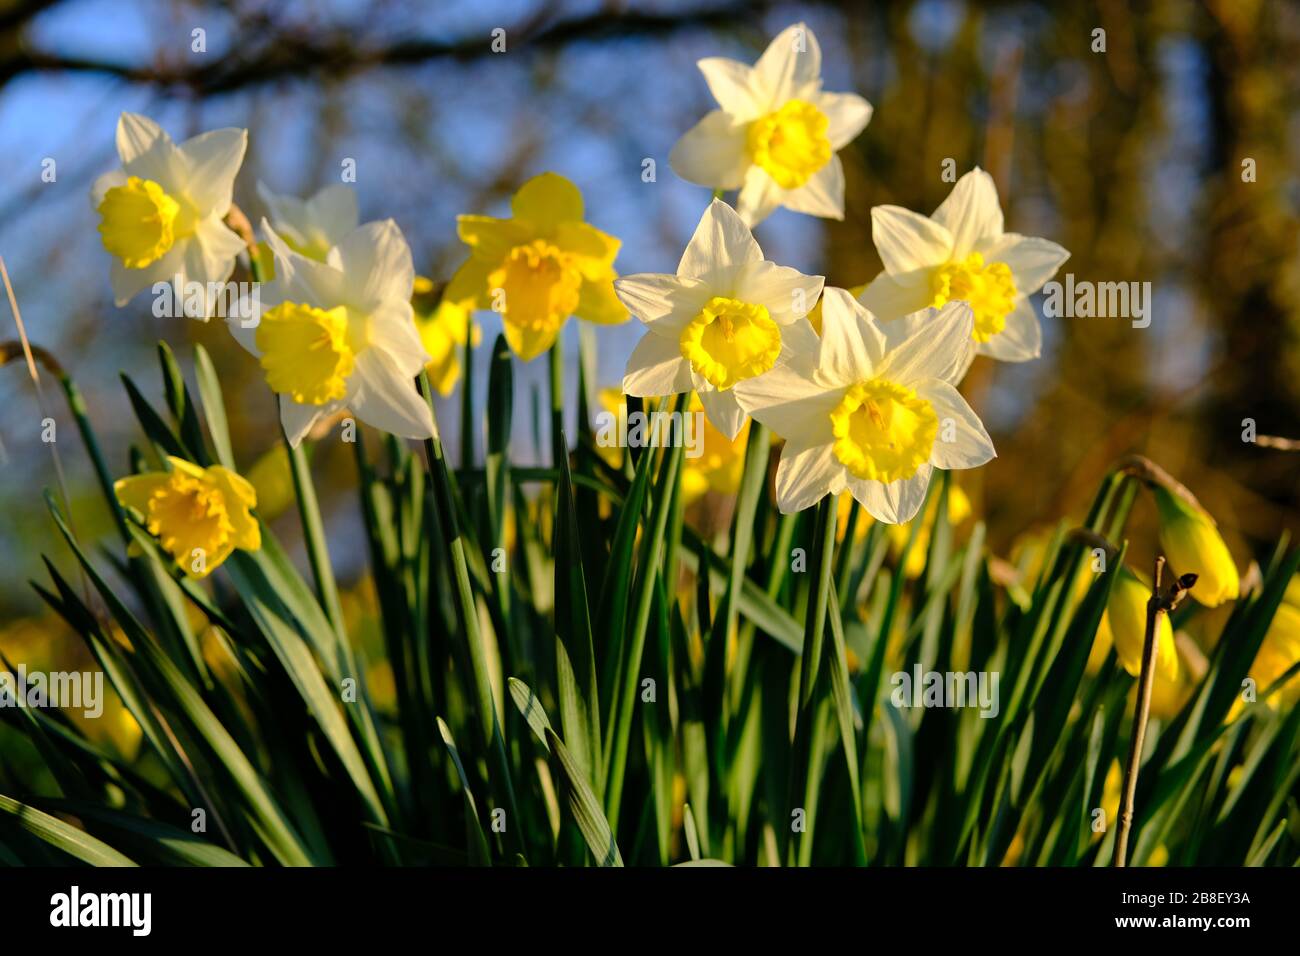 Die traditionelle Narzissenblüte mit gelben und weißen Blütenblättern. Narzissen (Narcissus) sind die schönsten Frühlingsblumen. Aufgenommen in Staffordshire, Großbritannien. Stockfoto